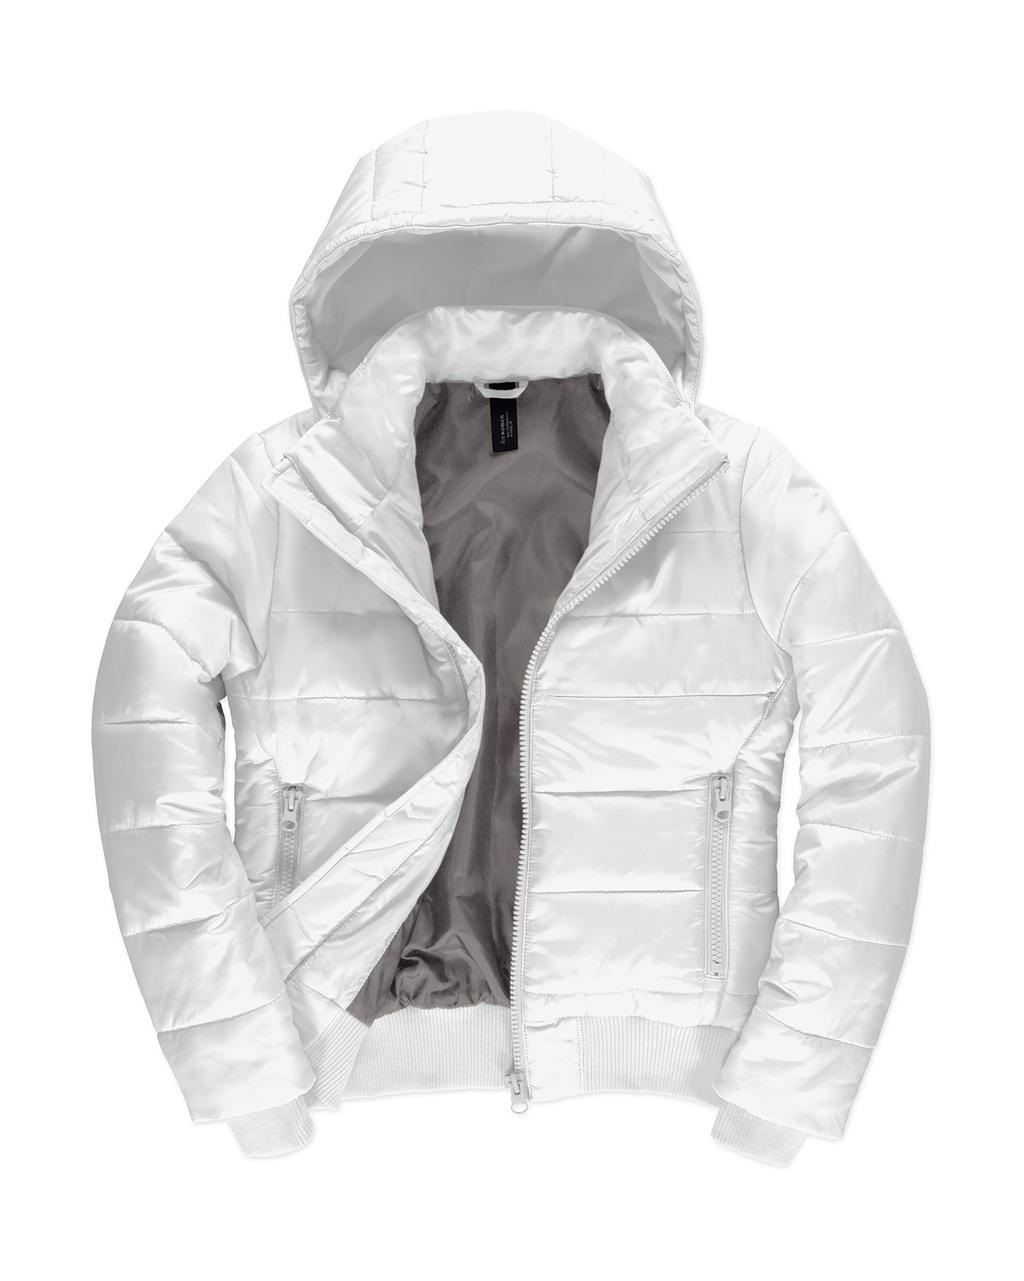  Superhood/women Jacket in Farbe White/Warm Grey